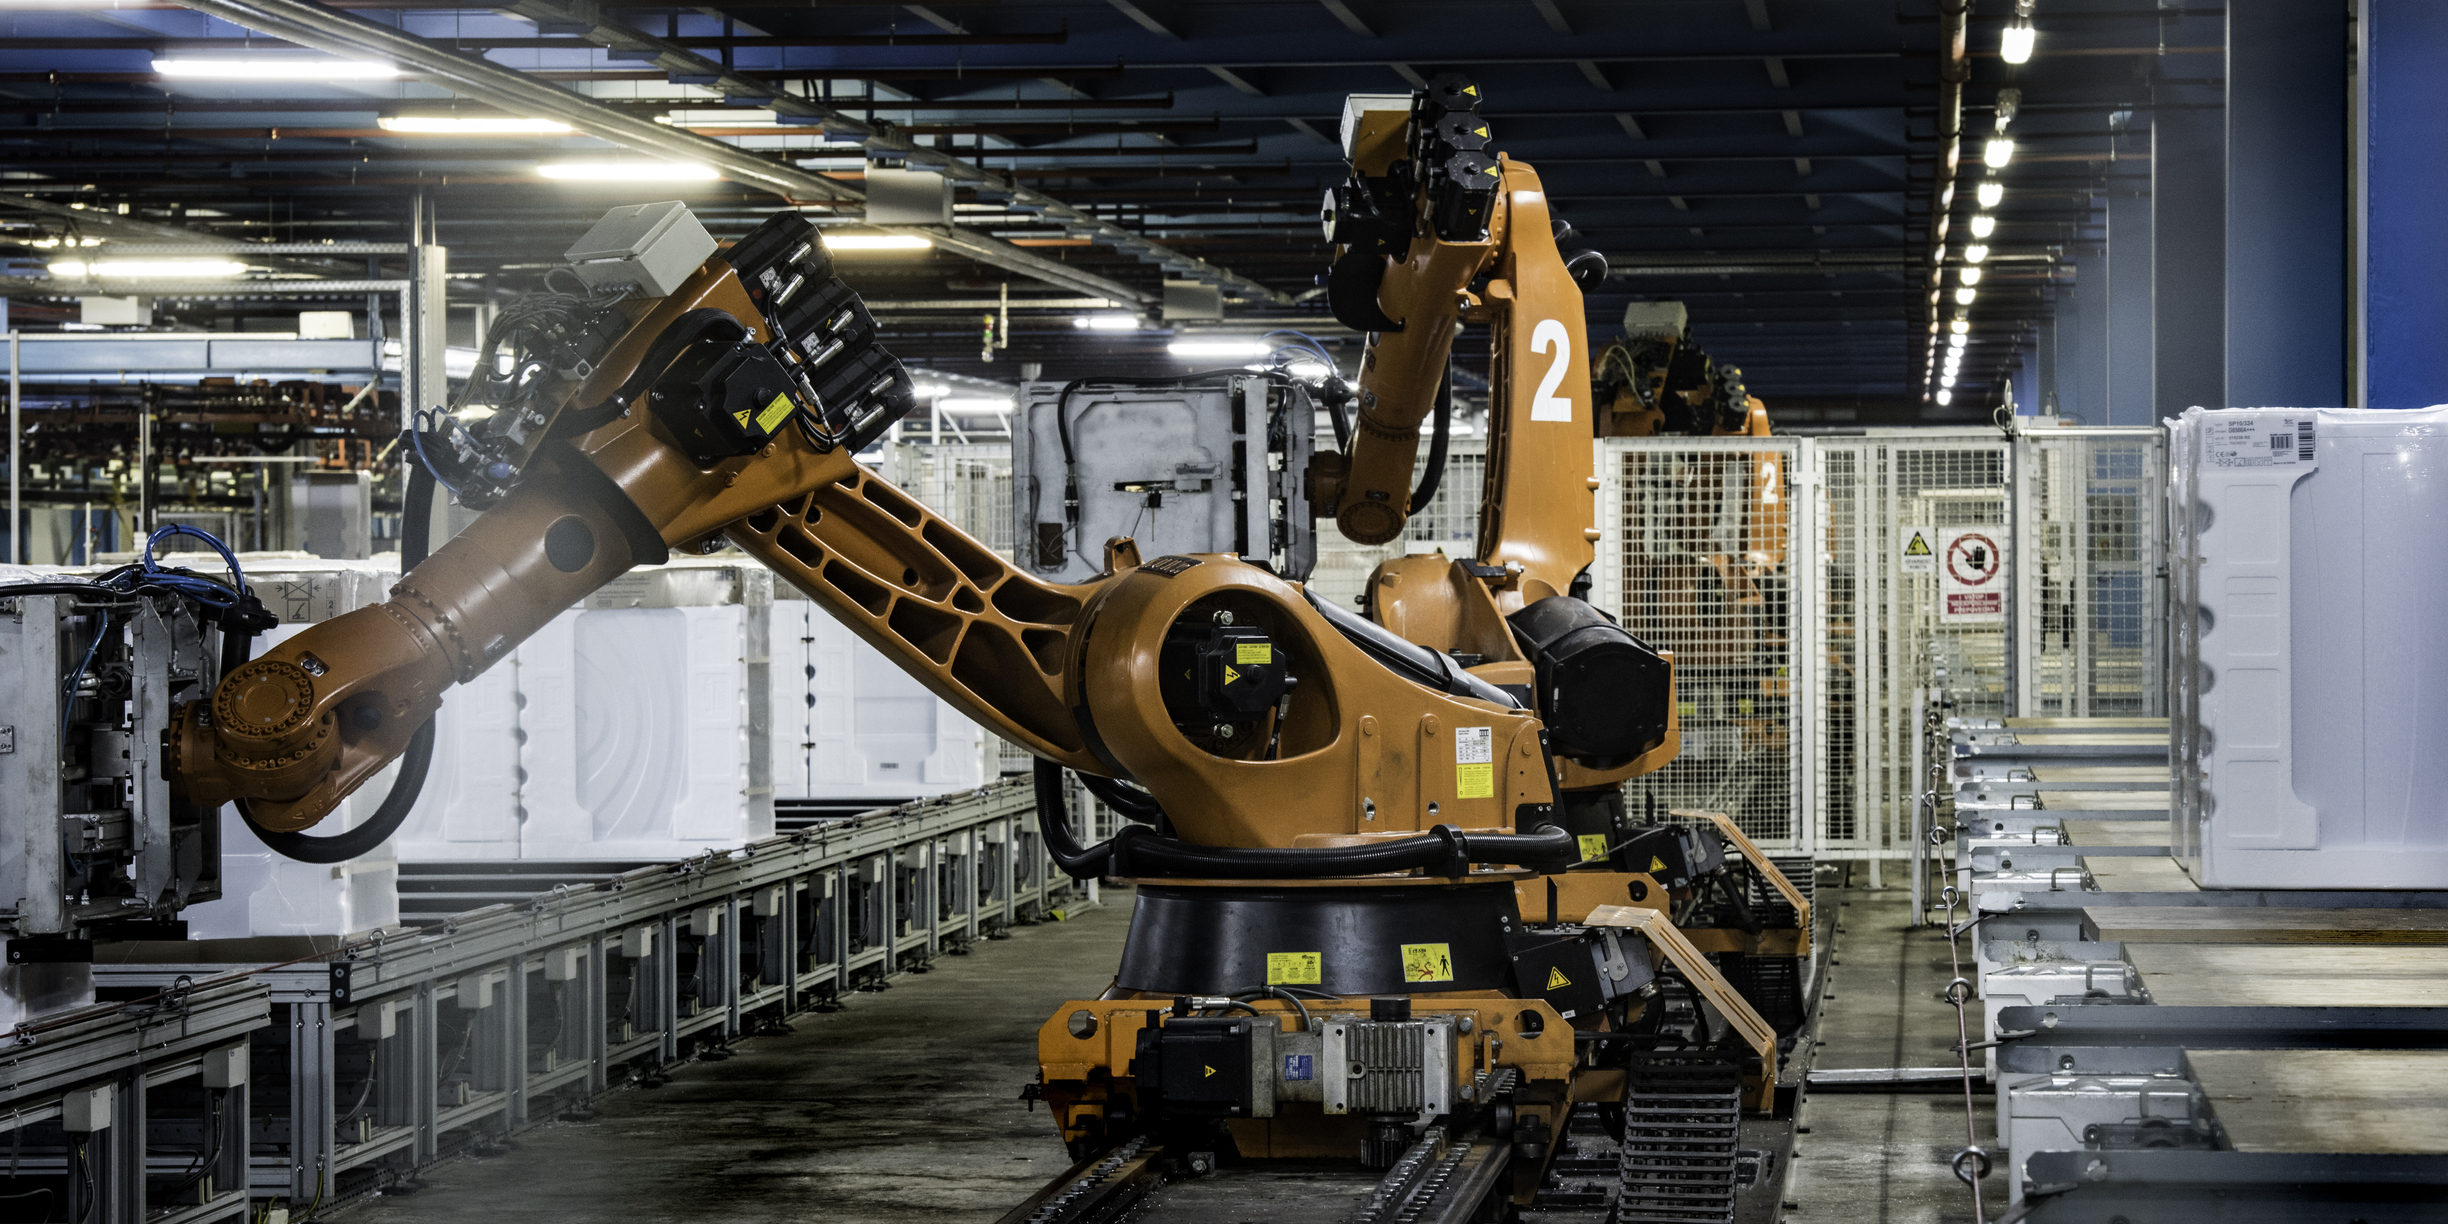 Eksperci w zakresie zabezpieczeń mówią o lukach w oprogramowaniu robotów przemysłowych